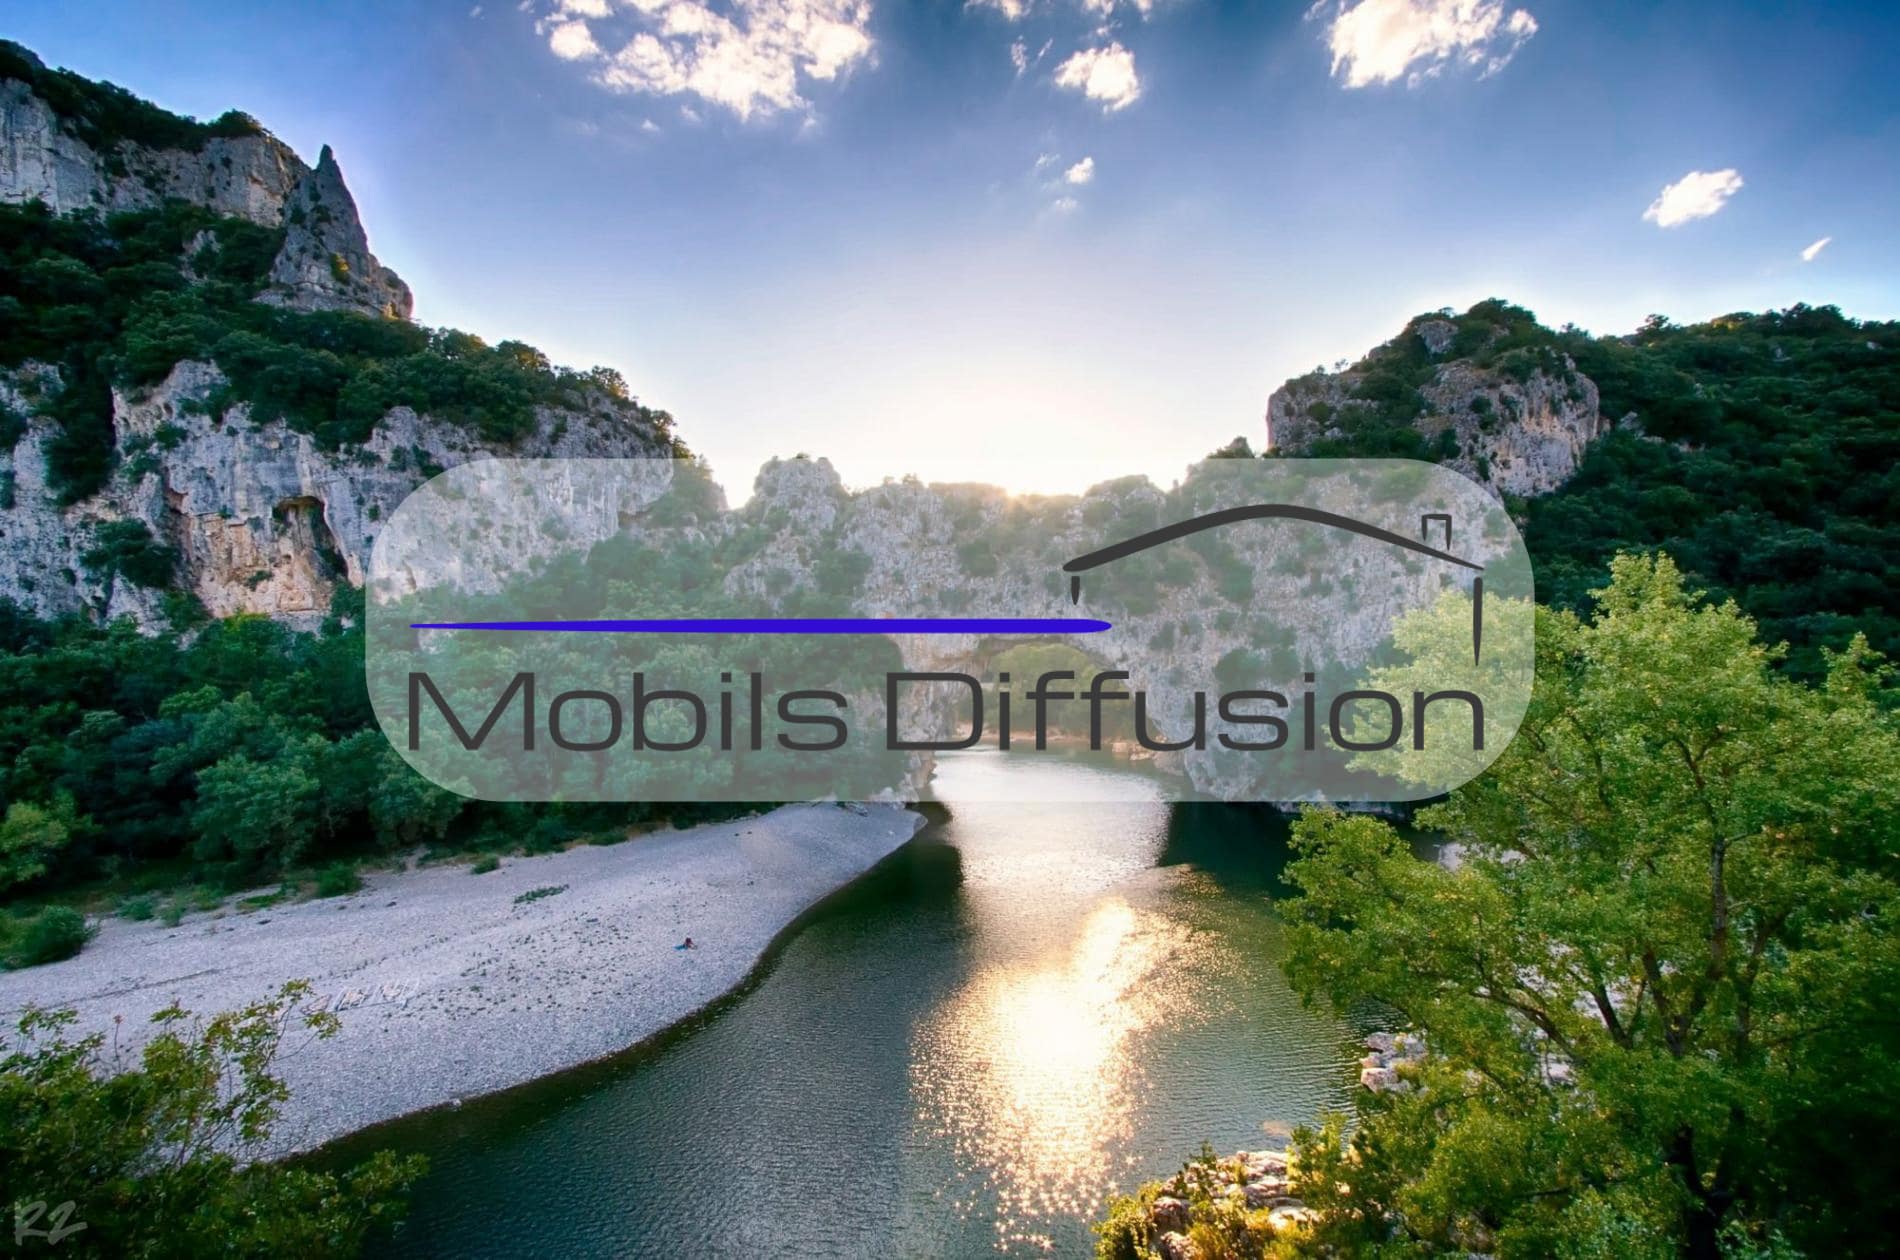 Mobils Diffusion - Parcelle pour mobil-home dans un camping familial de l’Ardèche